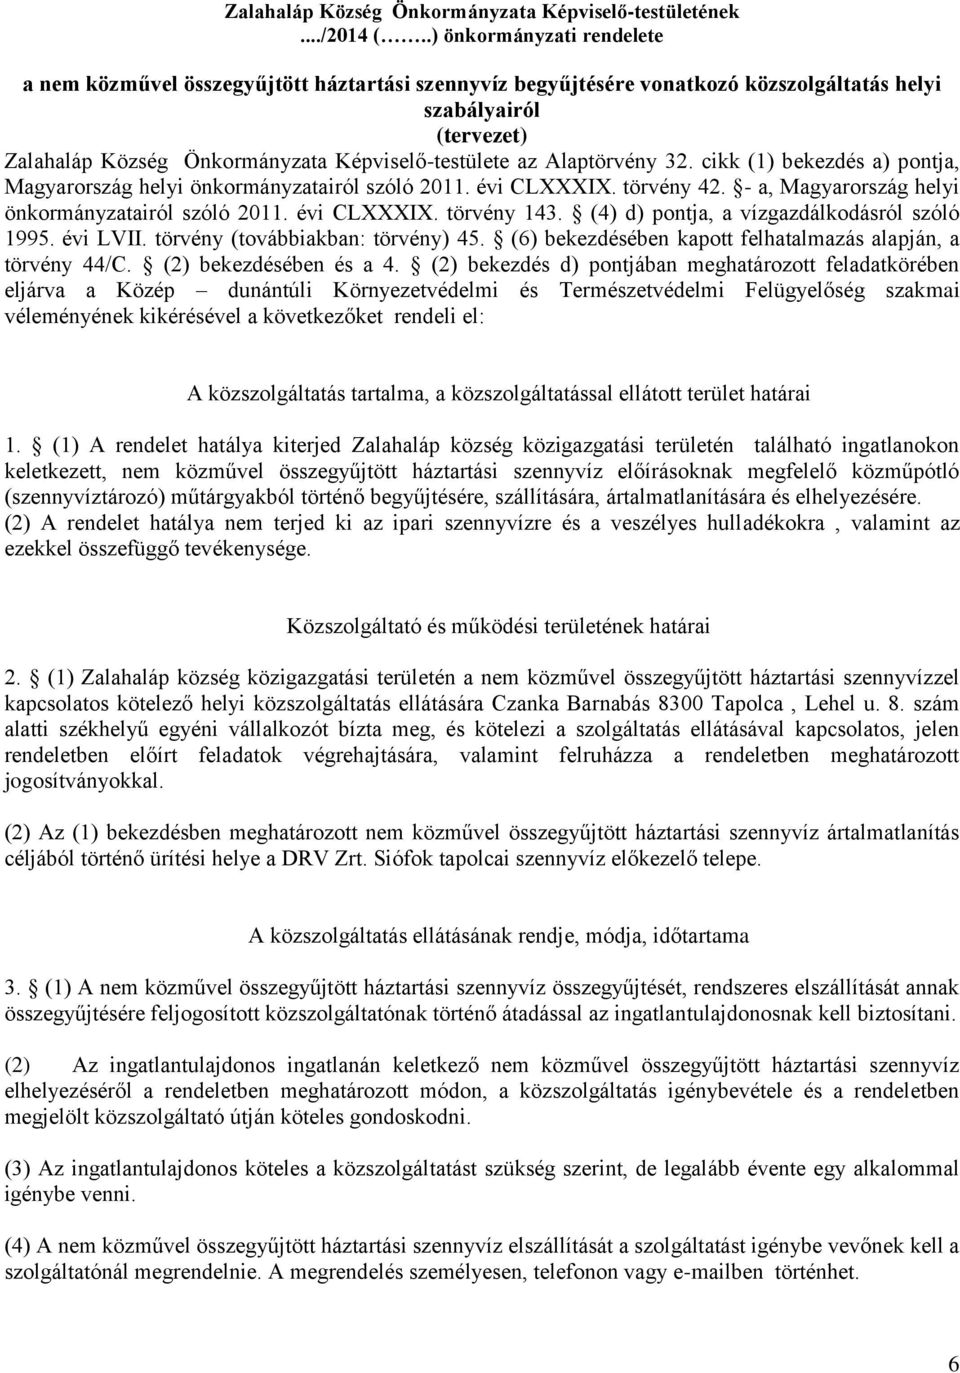 Alaptörvény 32. cikk (1) bekezdés a) pontja, Magyarország helyi önkormányzatairól szóló 2011. évi CLXXXIX. törvény 42. - a, Magyarország helyi önkormányzatairól szóló 2011. évi CLXXXIX. törvény 143.